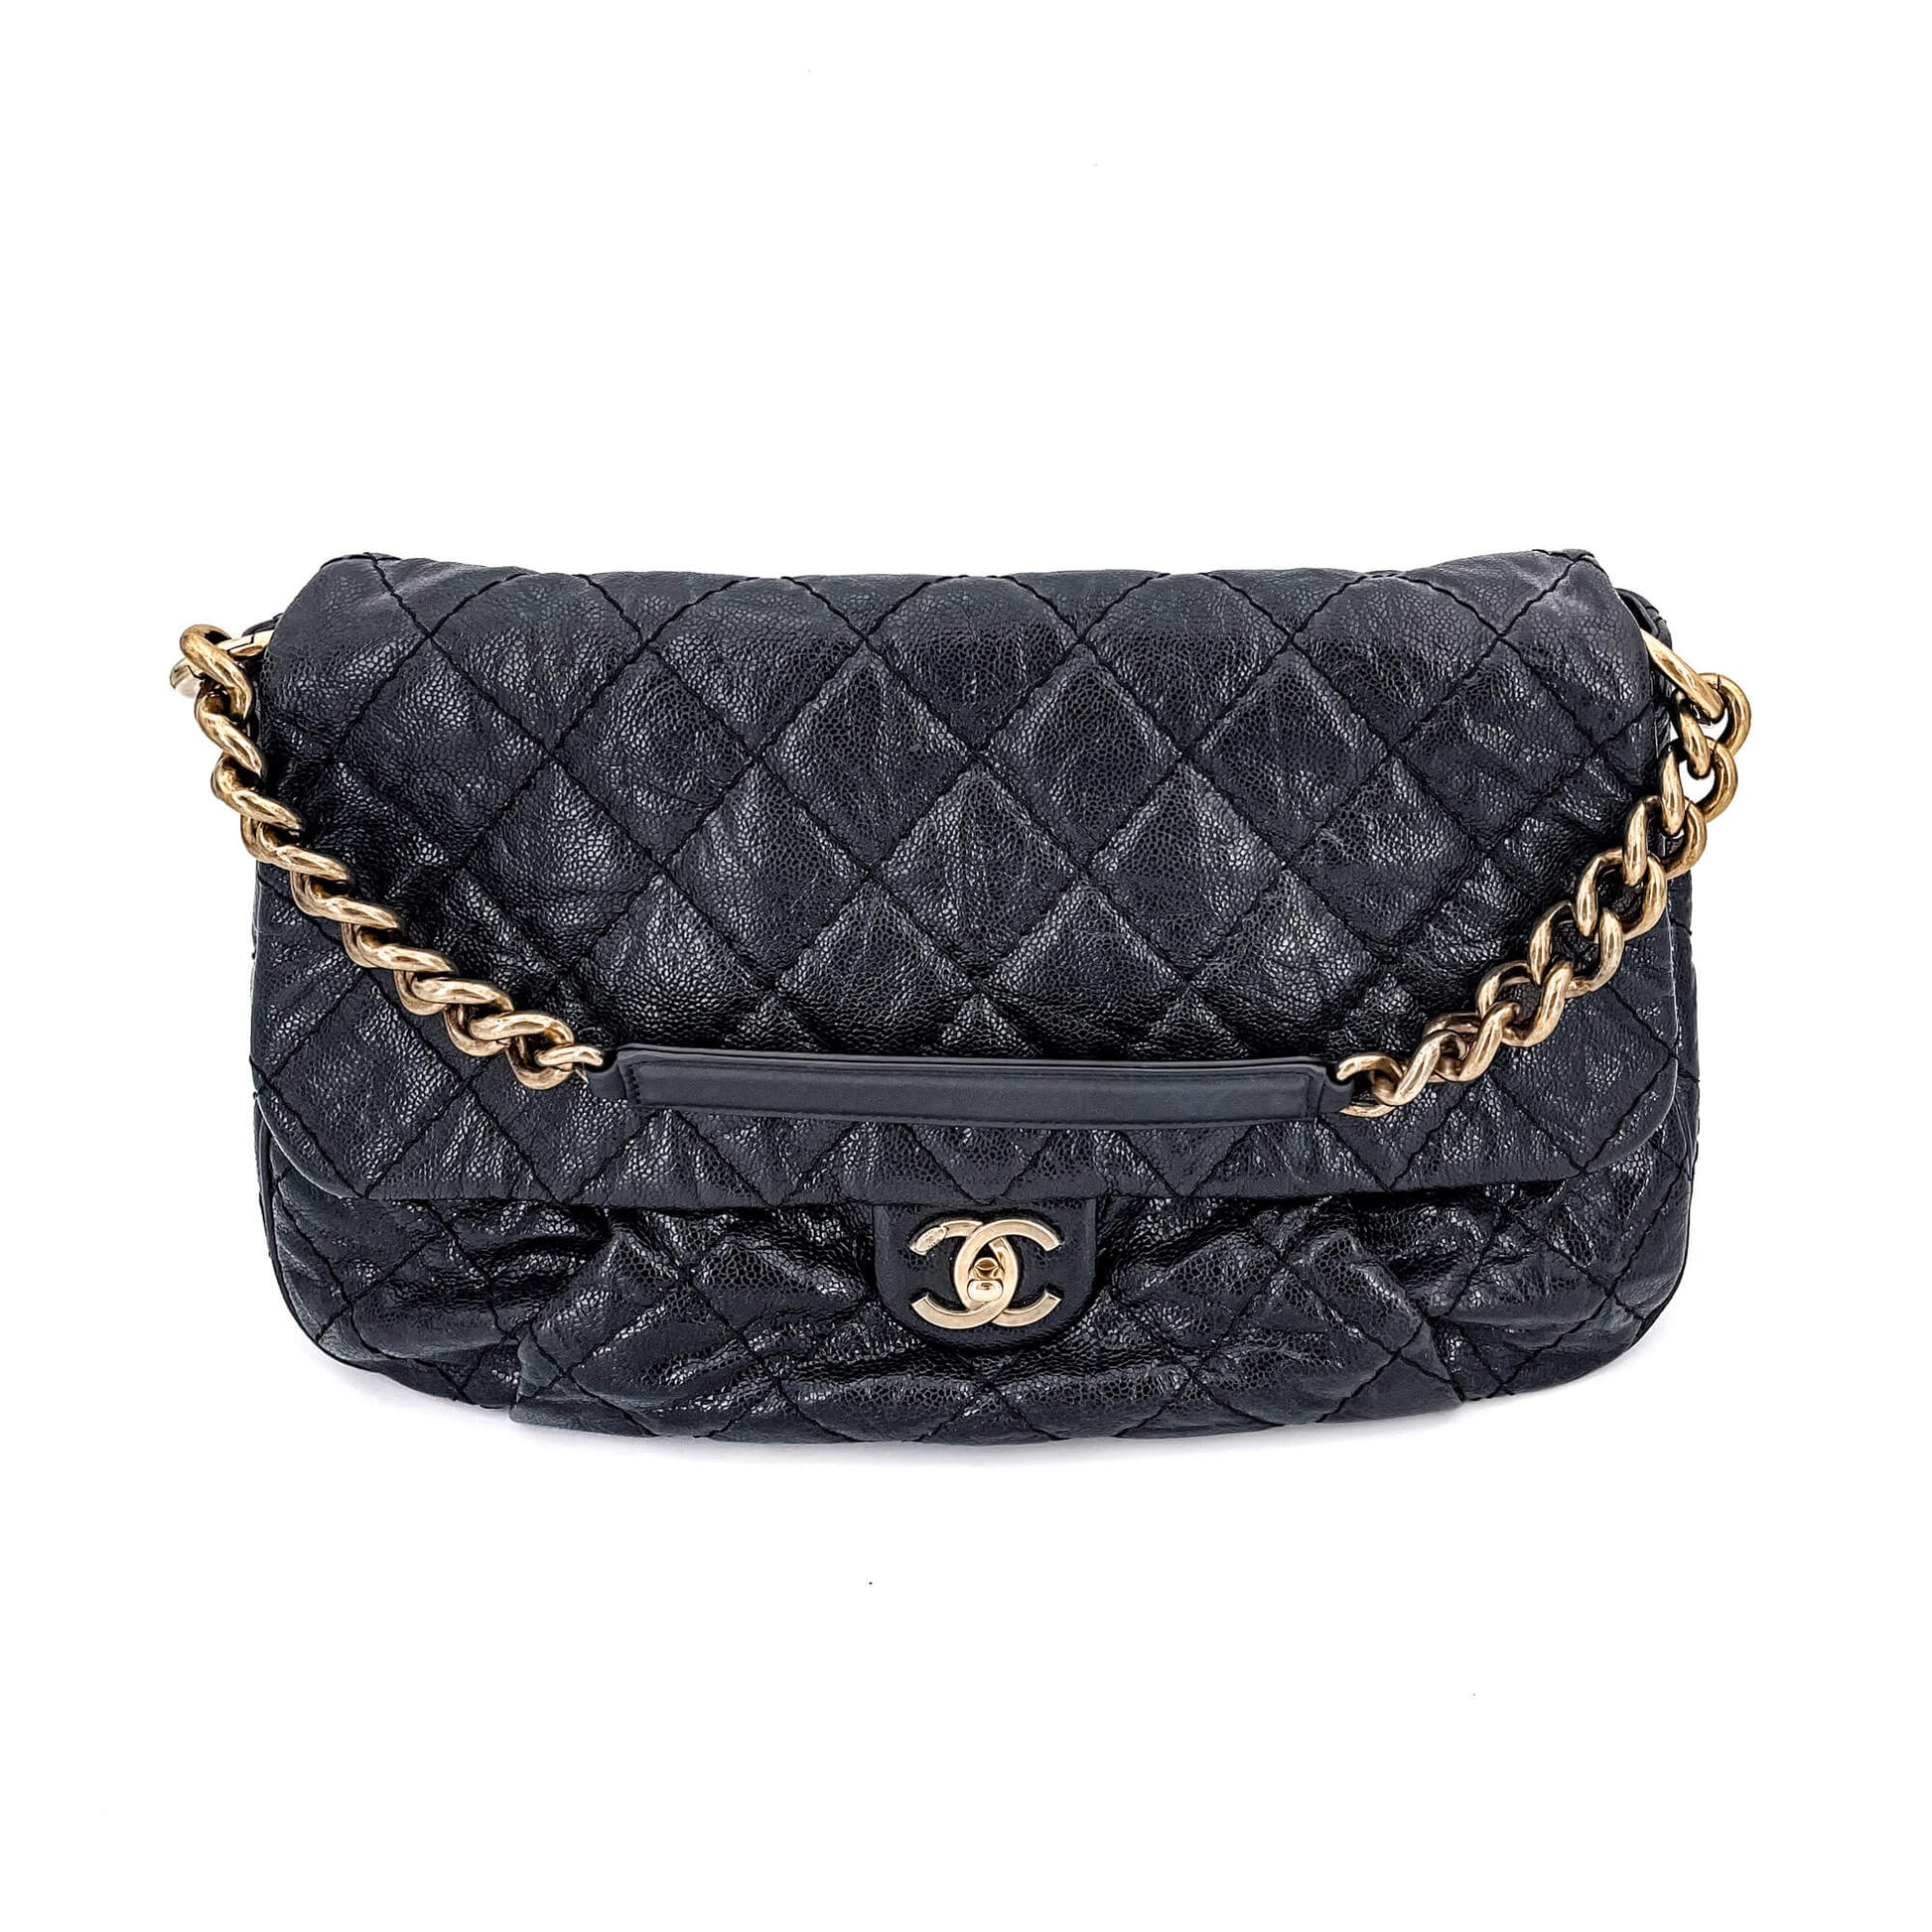 Chanel Jumbo Distressed Caviar Black Bag - Tabita Bags – Tabita Bags with  Love